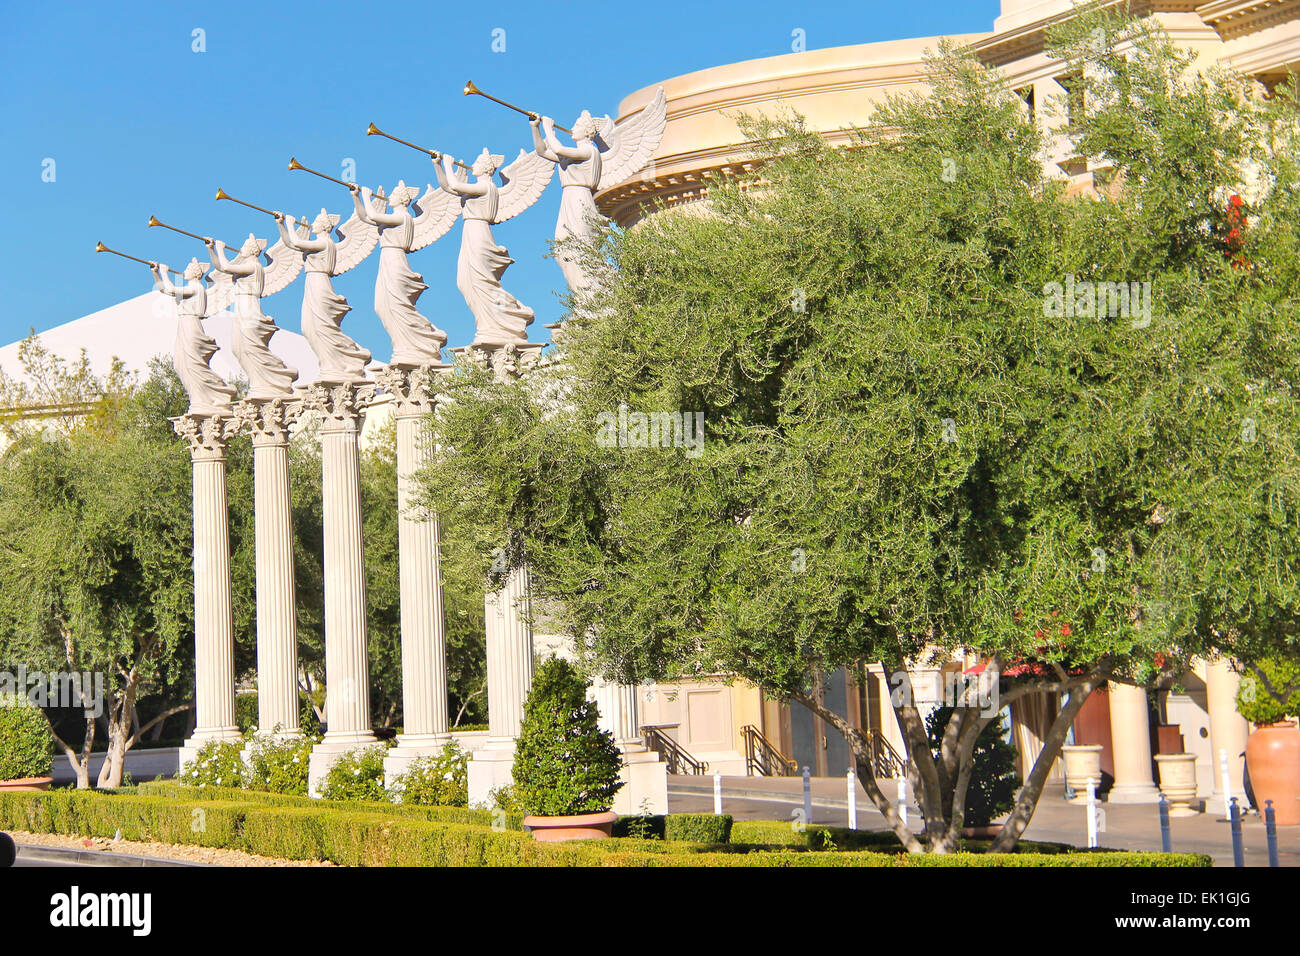 Las Vegas, Nevada, USA - 21. Oktober 2013: Statuen von Putten im Caesars Palace in Las Vegas, Caesars Palace Hotel im Jahr 1966 eröffnet und verfügt über eine römische Reich Thema. Stockfoto